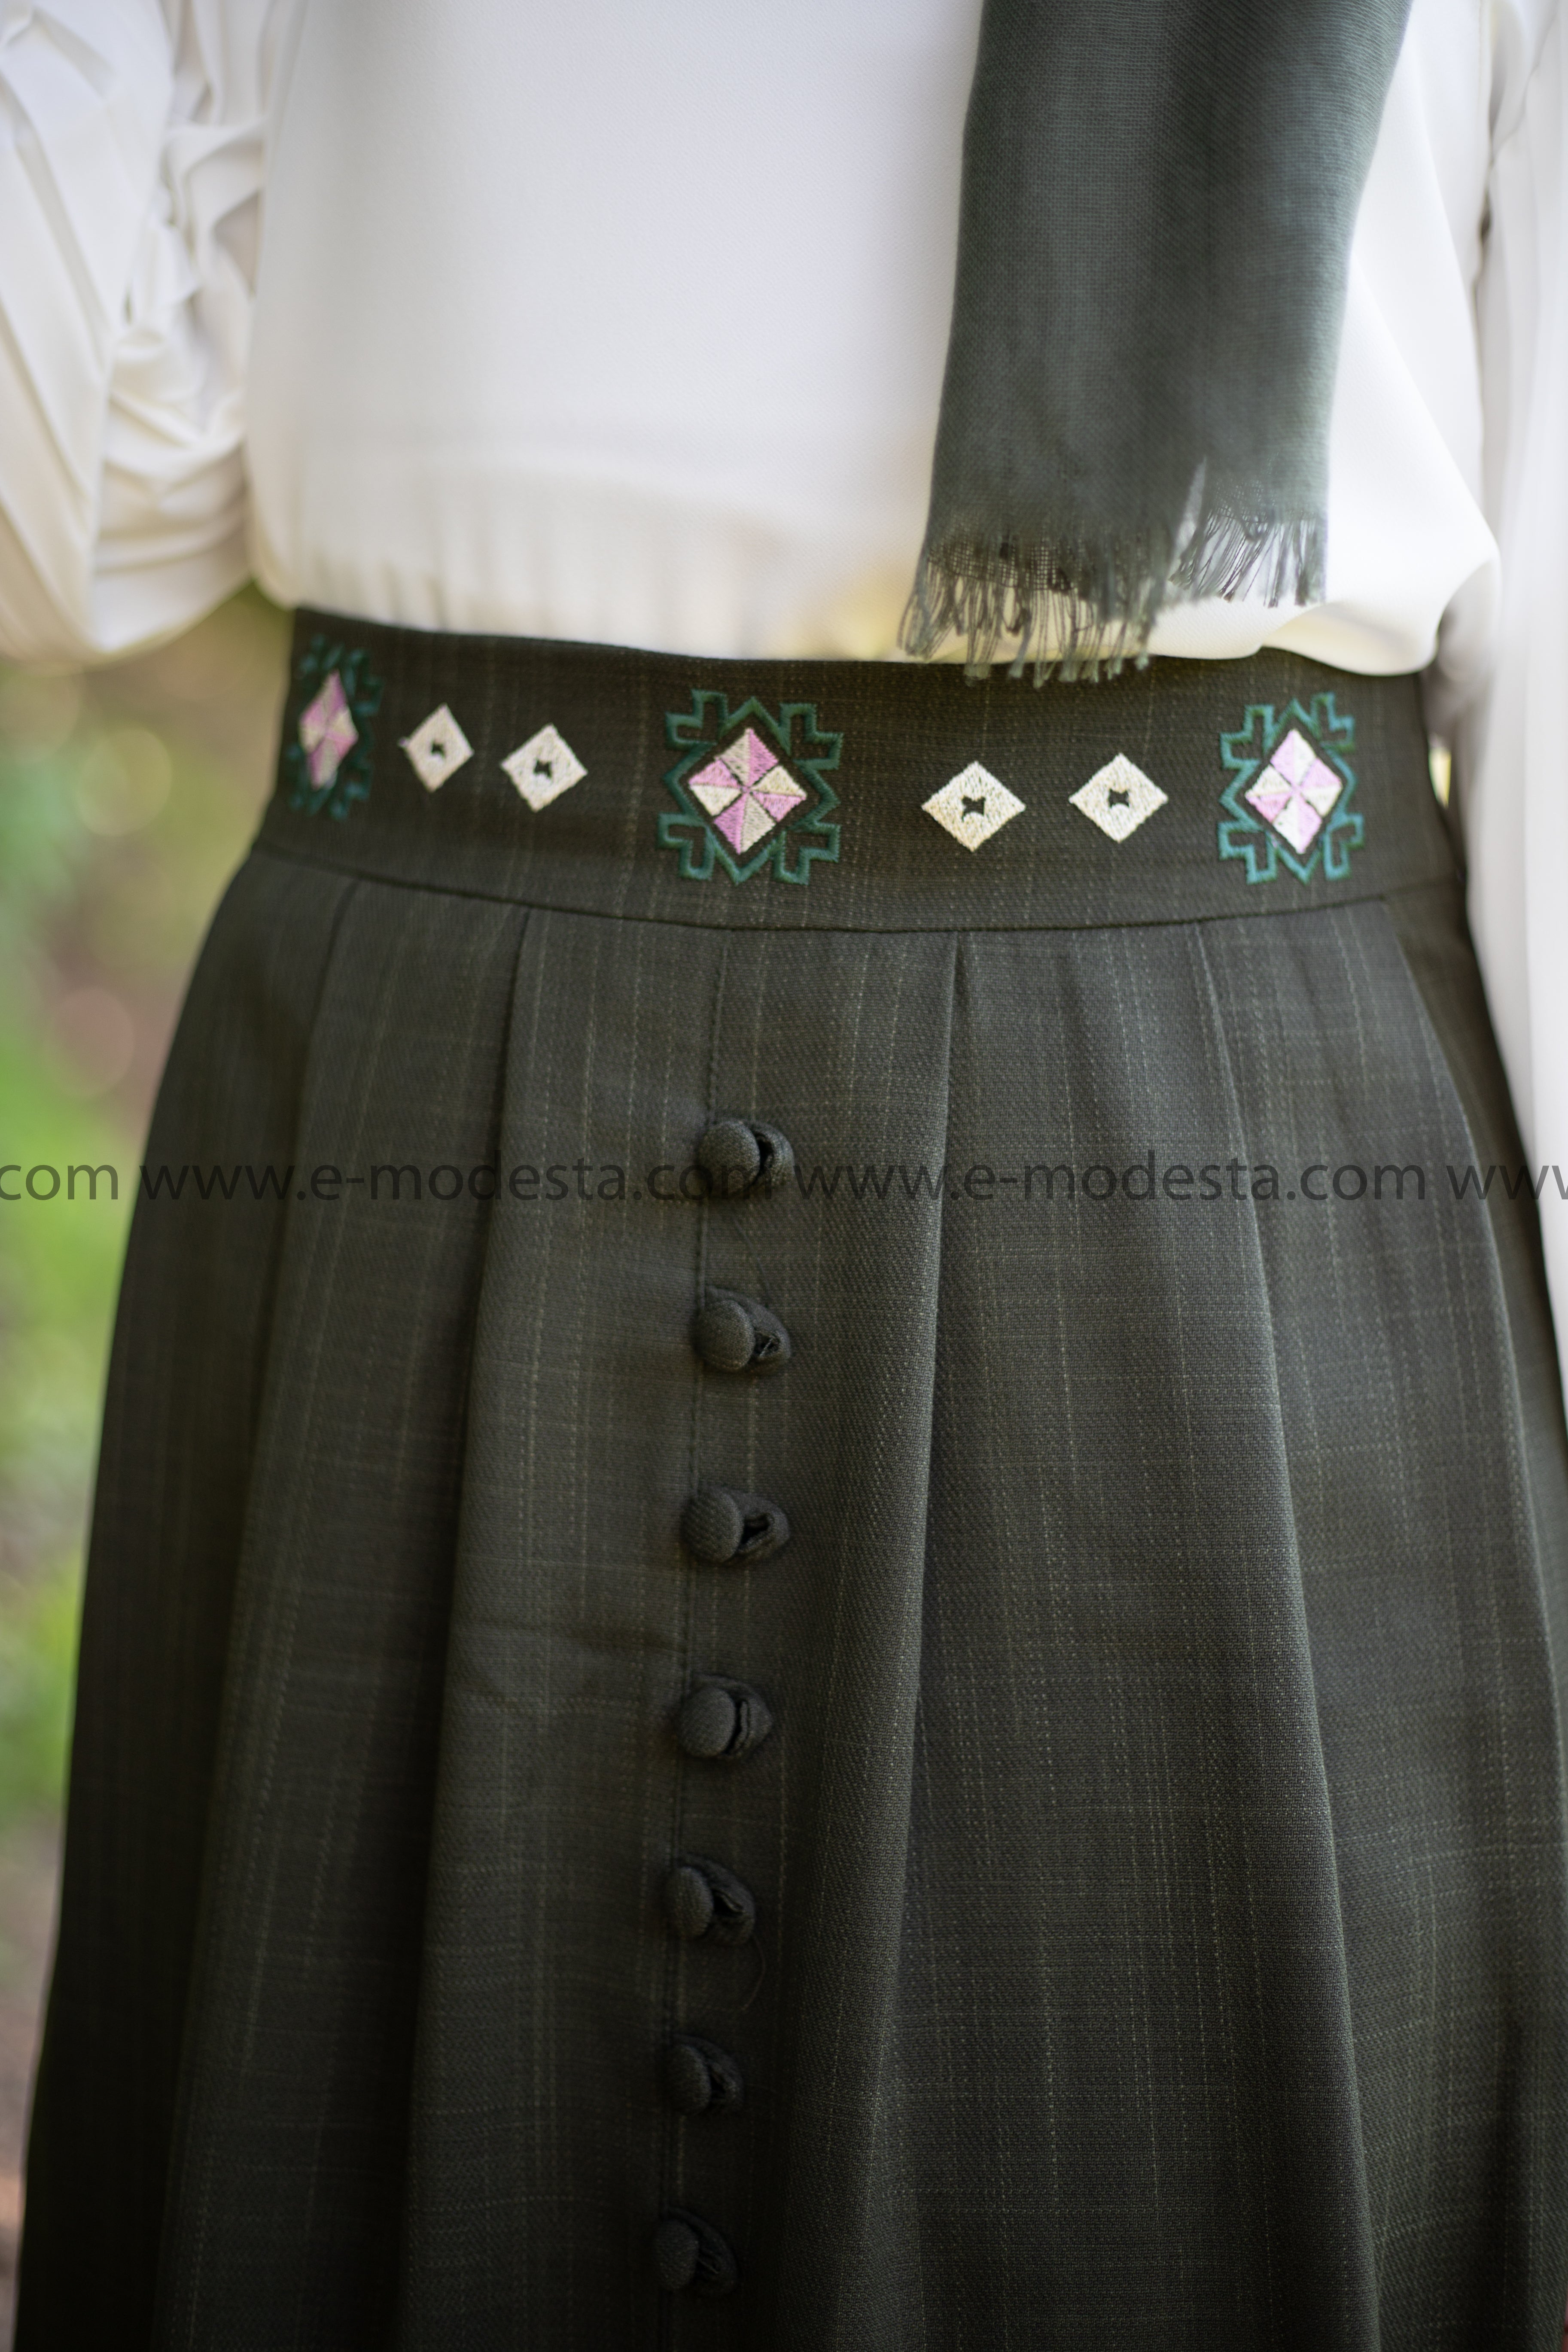 SALE Elegant Embroidery Skirt | Dark Green Color - E-Modesta